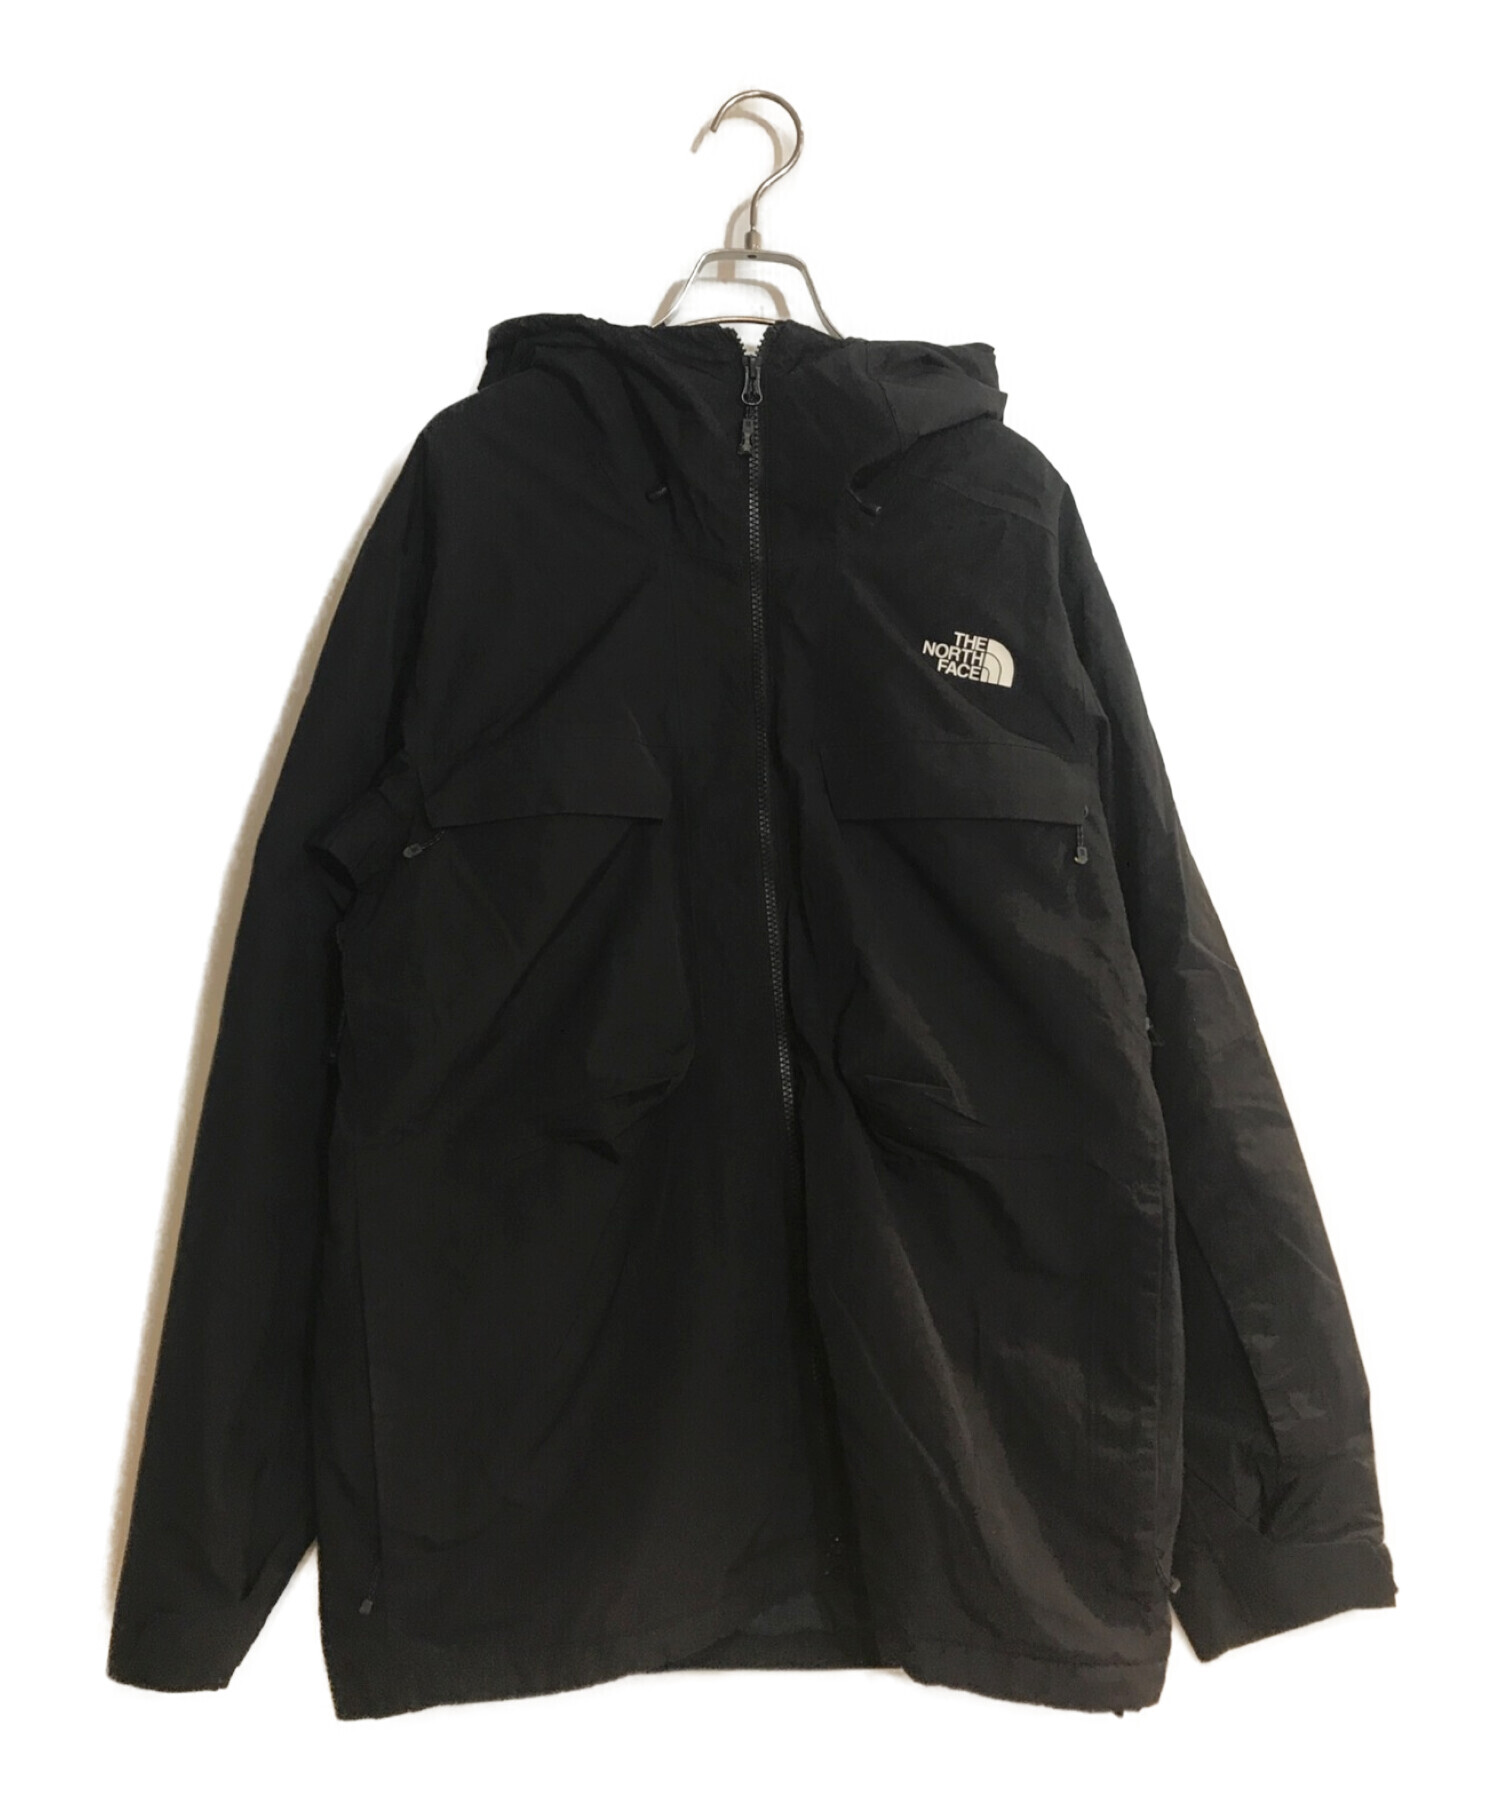 カラーFourbarrel Triclimate Jacket ブラック